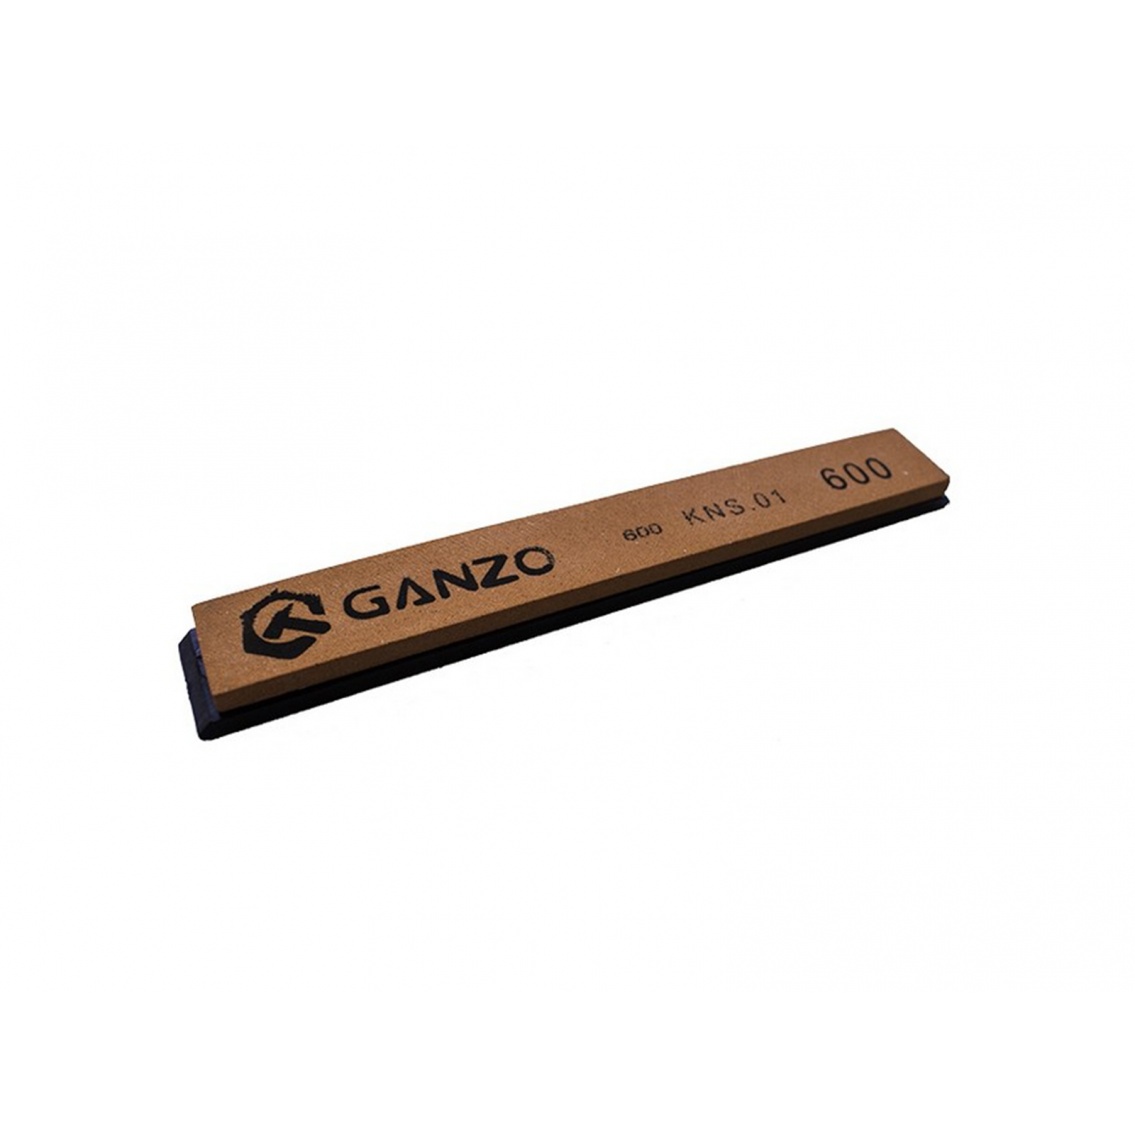 Ganzo S600 - Piatra de ascutit Ganzo - 1